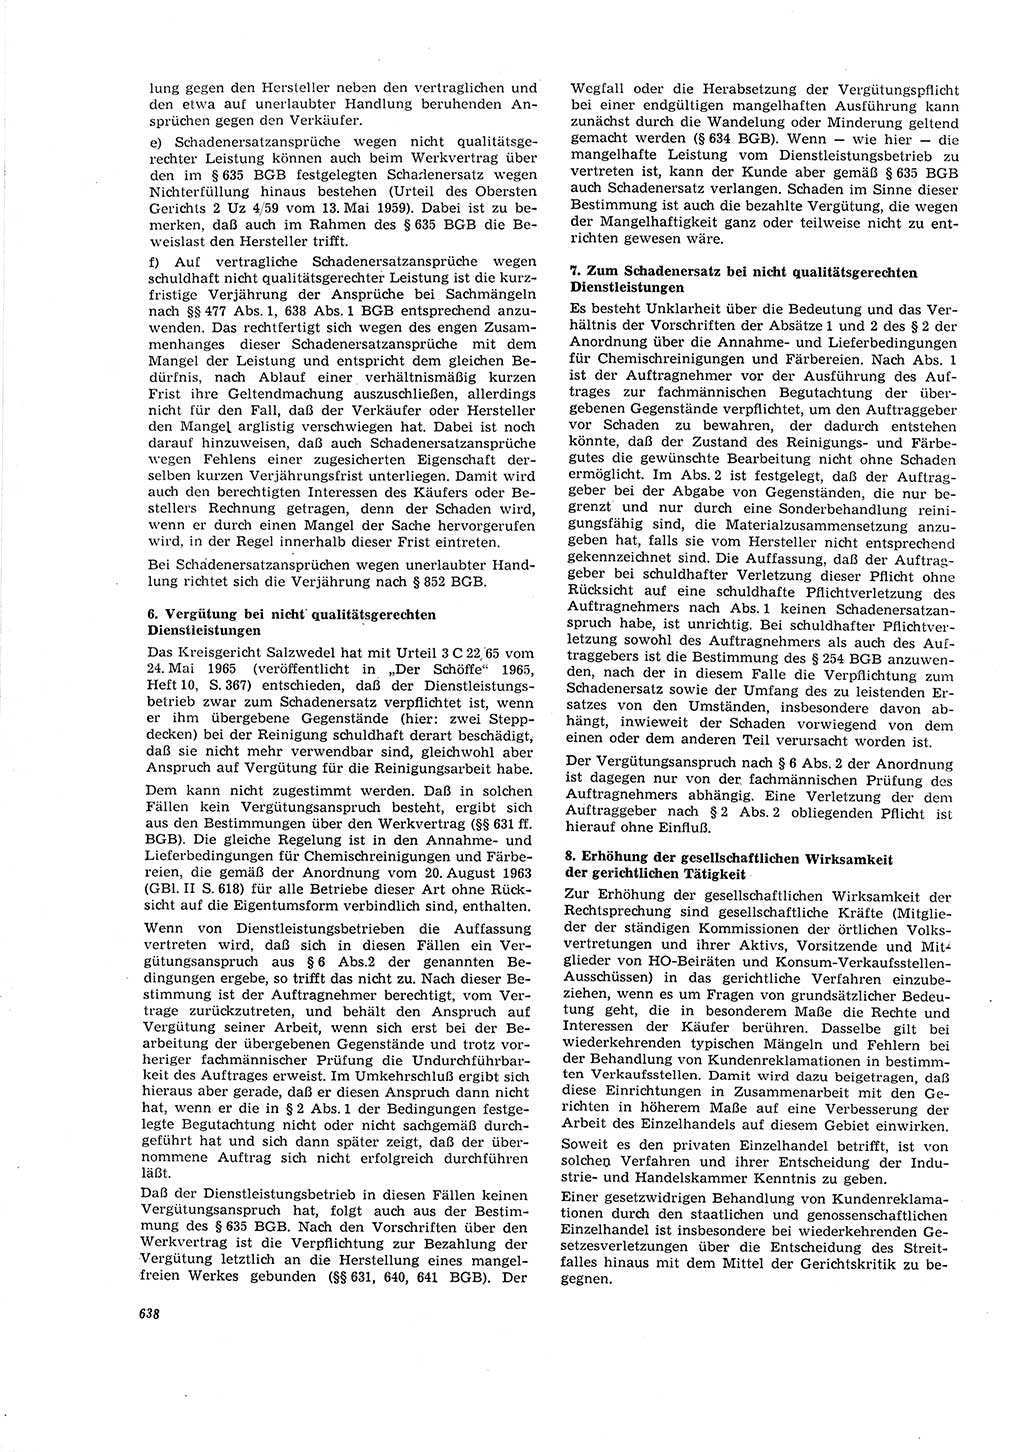 Neue Justiz (NJ), Zeitschrift für Recht und Rechtswissenschaft [Deutsche Demokratische Republik (DDR)], 20. Jahrgang 1966, Seite 638 (NJ DDR 1966, S. 638)